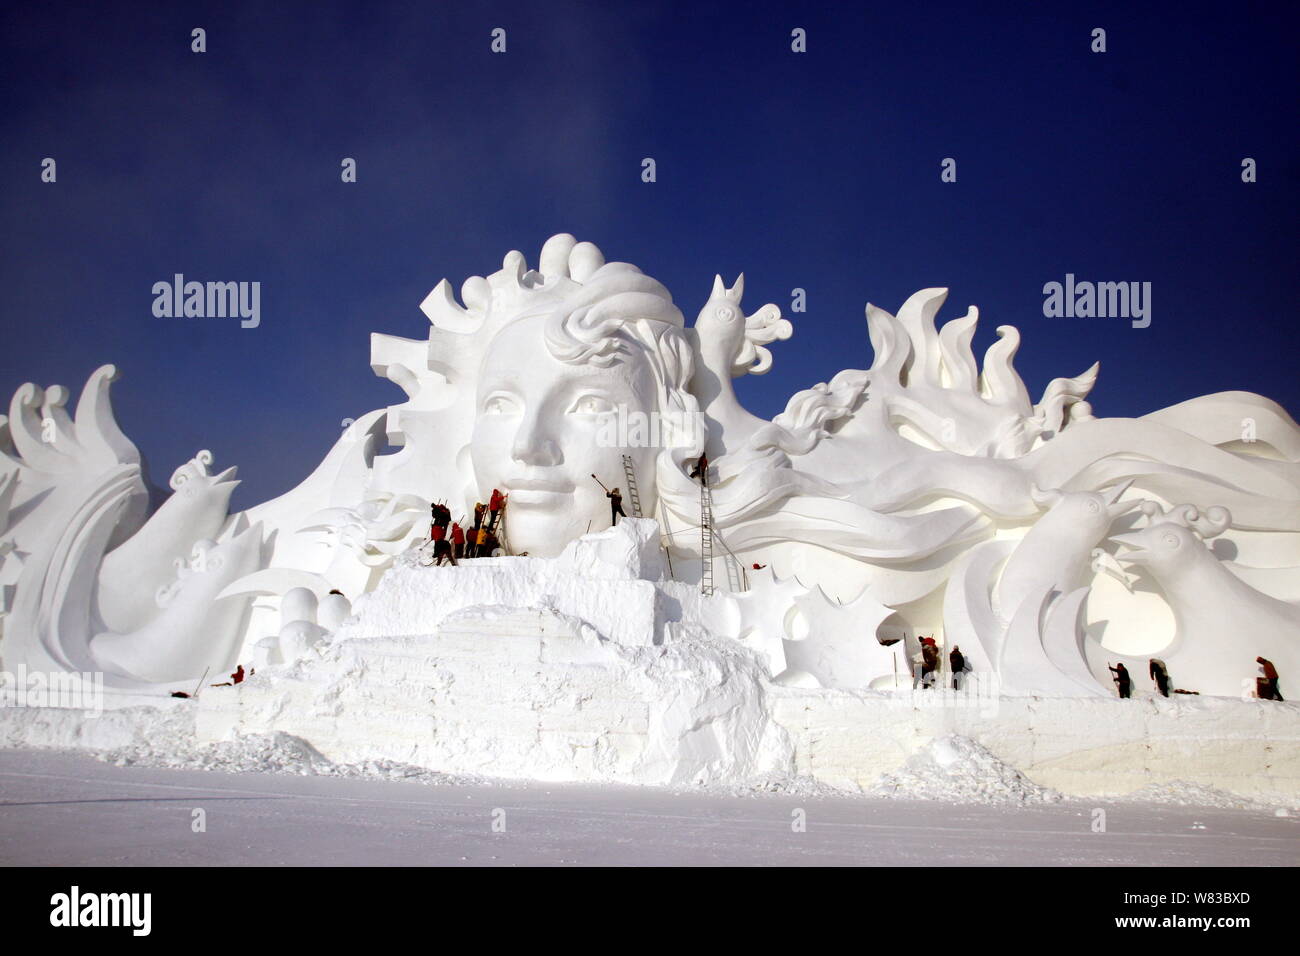 Artisti crea la scultura di neve " canzone d'amore" per la ventinovesima Harbin Sun Island International Snow Sculpture Art Expo nella città di Harbin, a nord-est della Cina di H Foto Stock